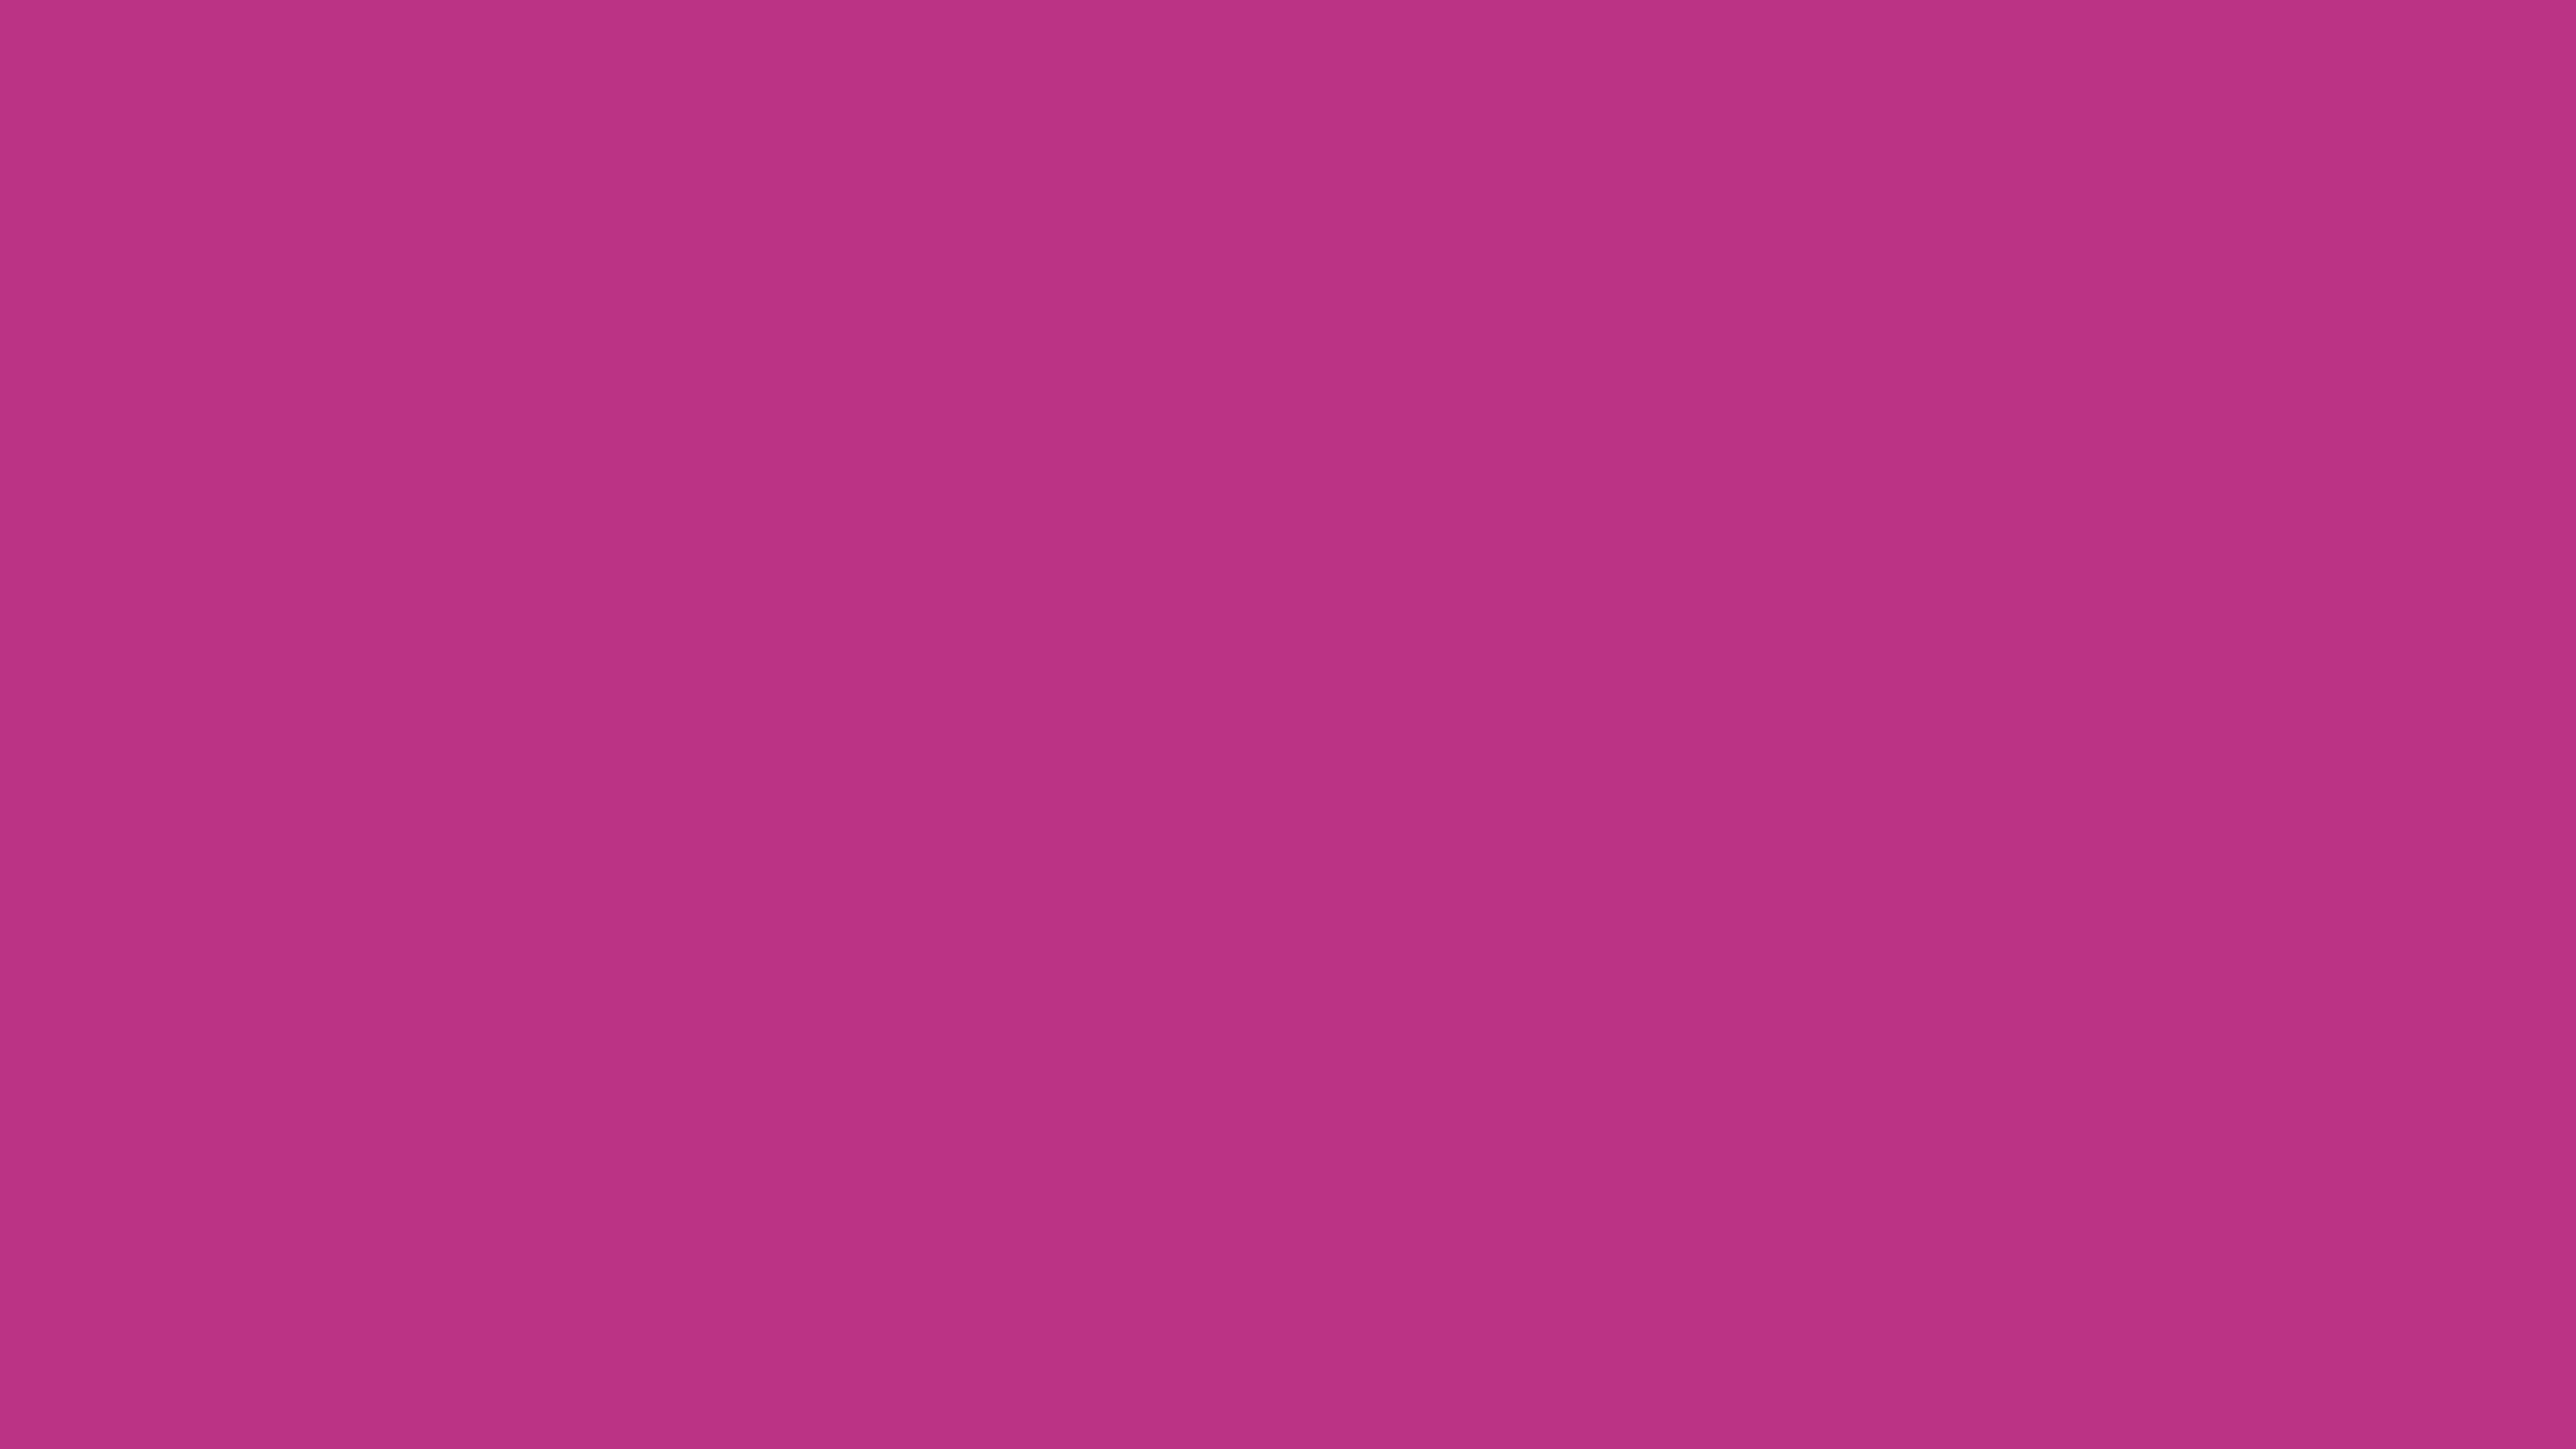 4096x2304 Medium Red-violet Solid Color Background